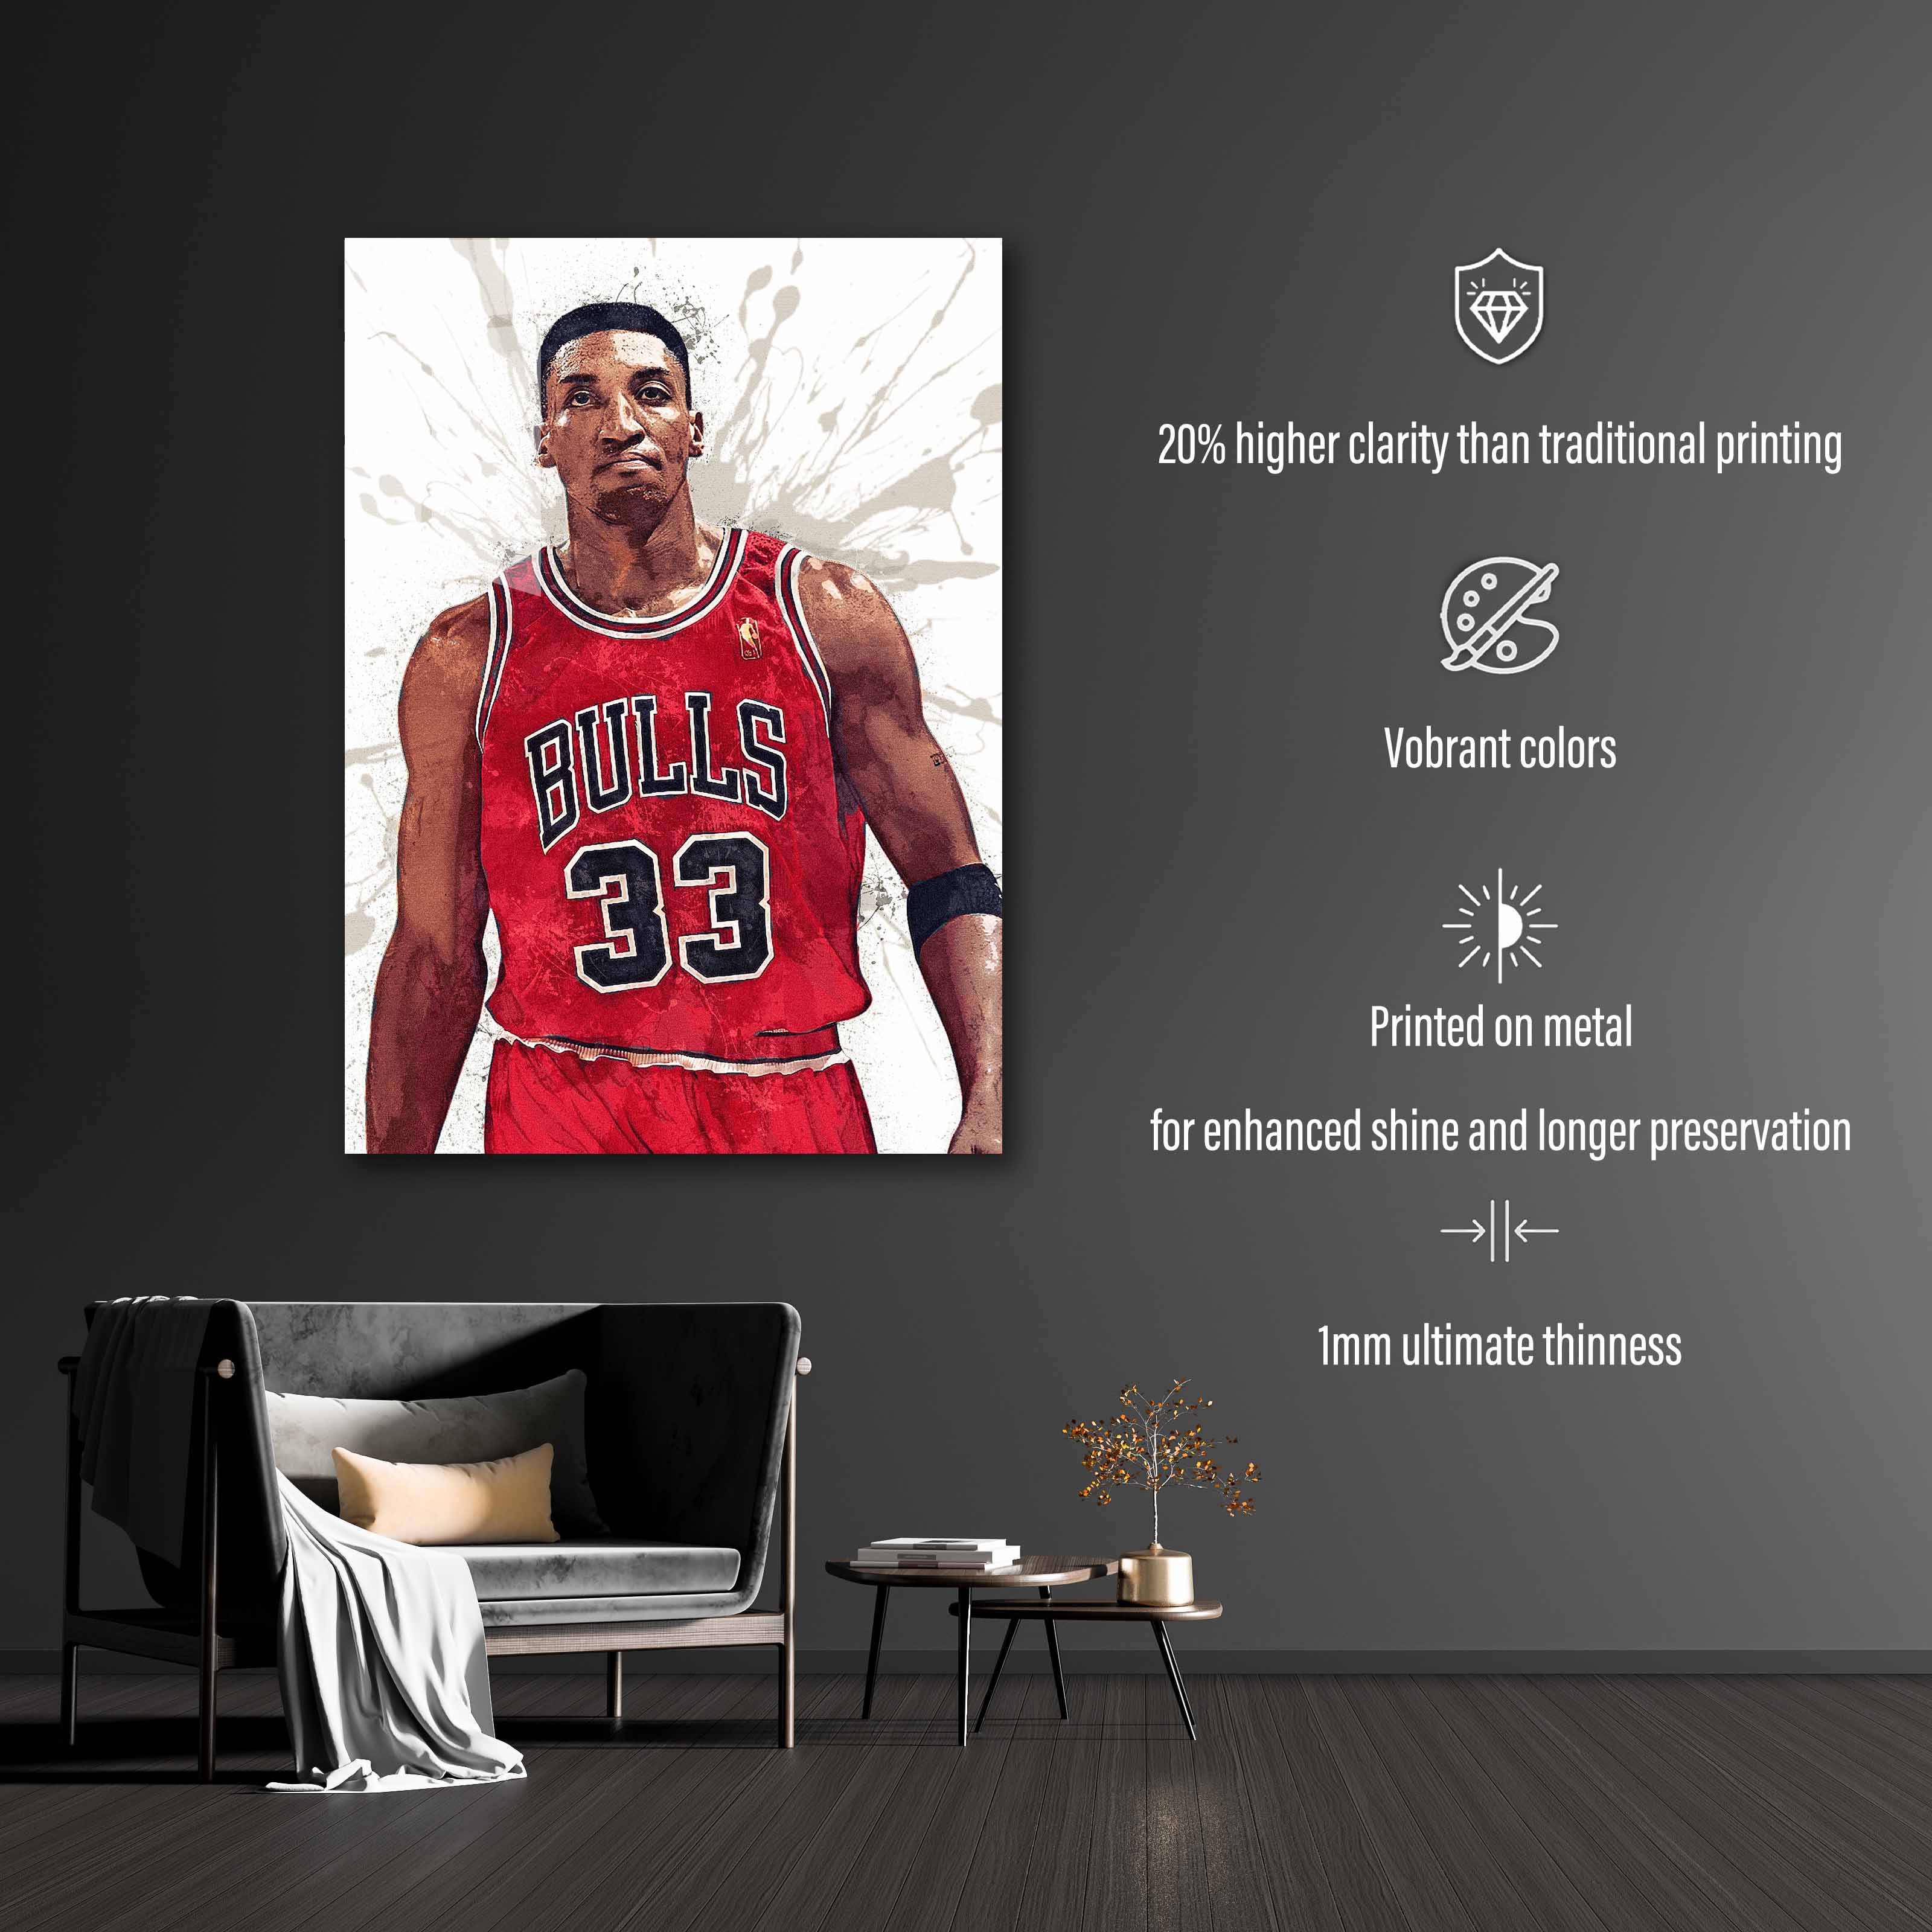 Scottie Pippen Chicago Bulls-designed by @Hoang Van Thuan